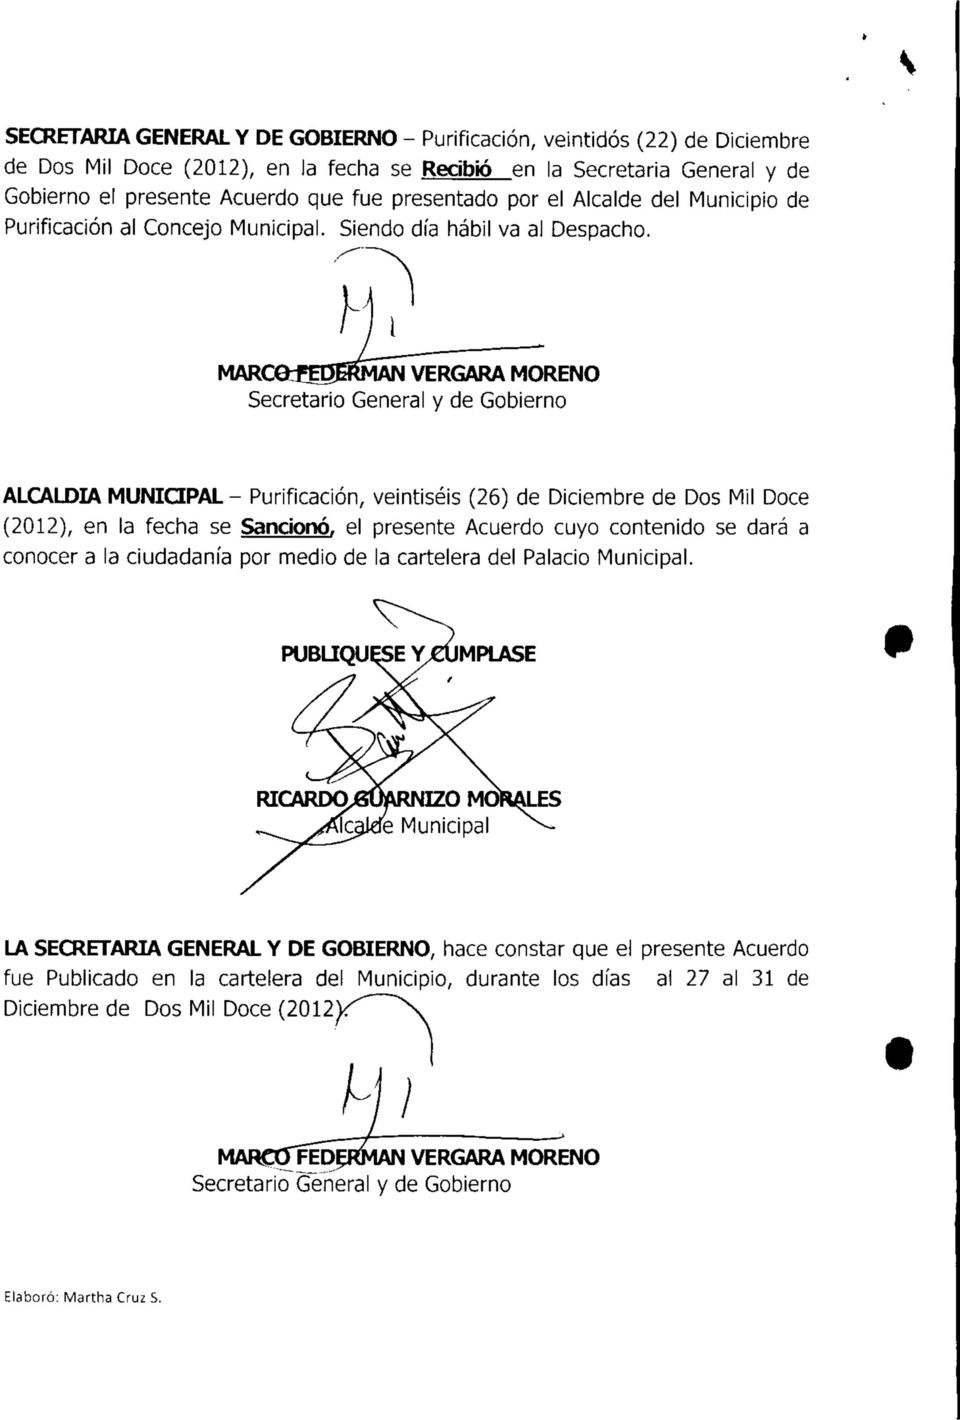 MARCeíBJERMAN VERGARA MORENO Secretario General y de Gobierno ALCALDÍA MUNICIPAL - Purificación, veintiséis (26) de Diciembre de Dos Mil Doce (2012), en la fecha se Sancionó, el presente Acuerdo cuyo